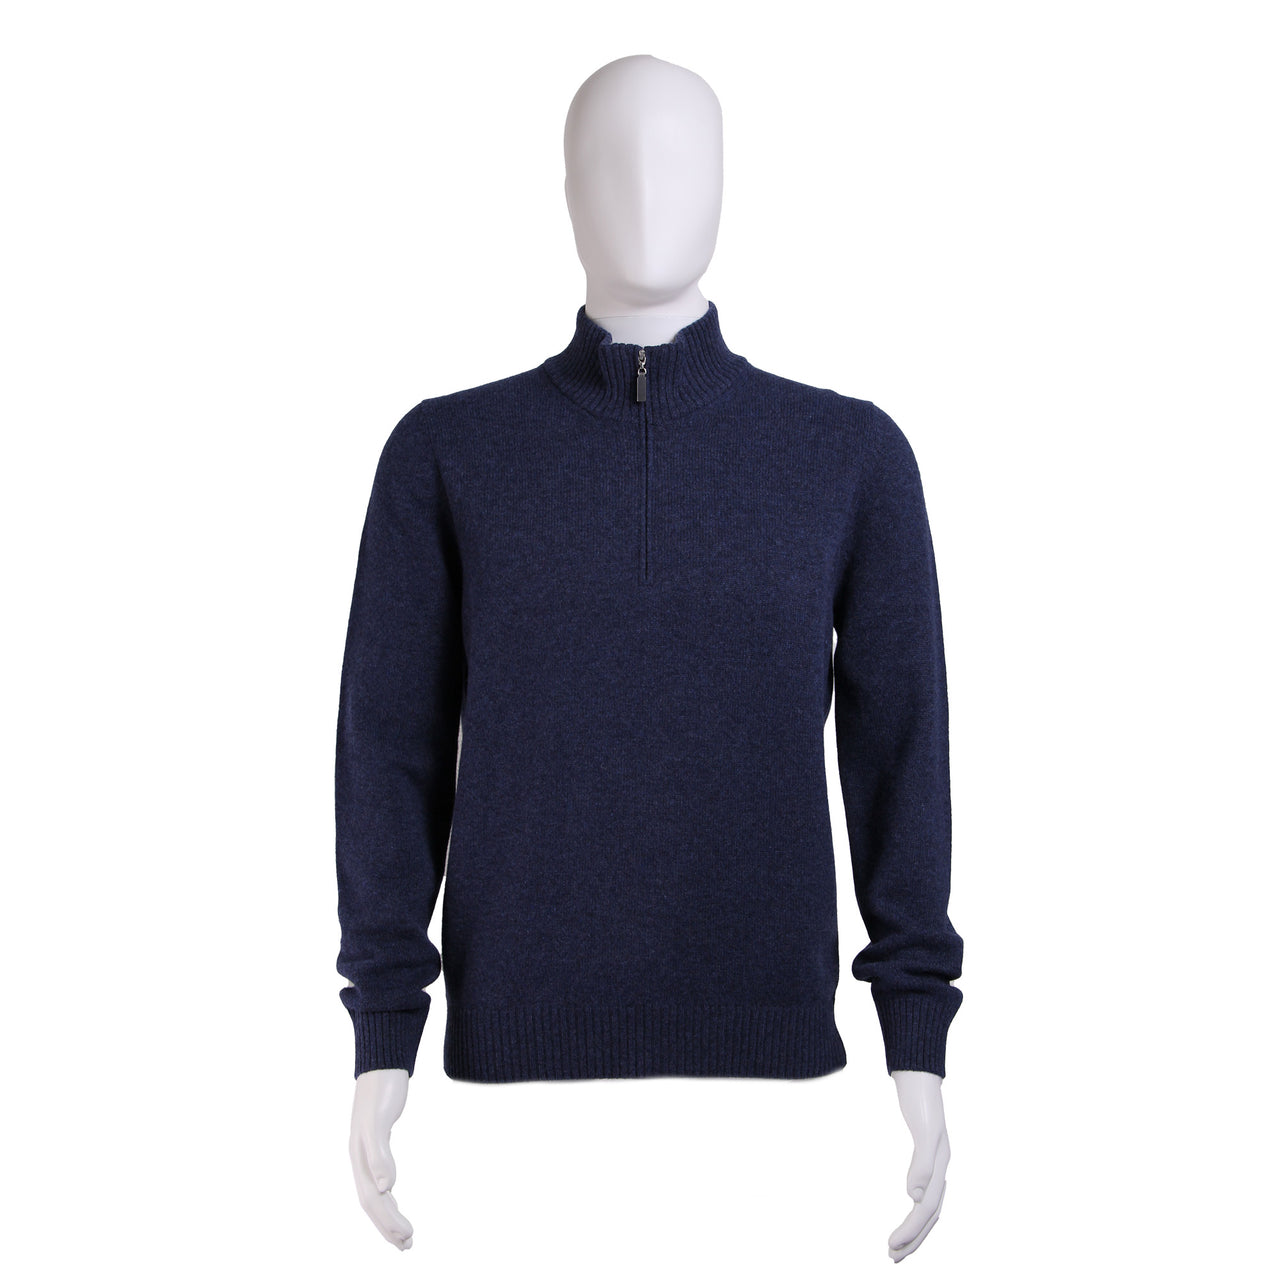 GRAN SASSO Cashmere/Wool Mock Neck 1/4 Zip Knit DENIM BLUE